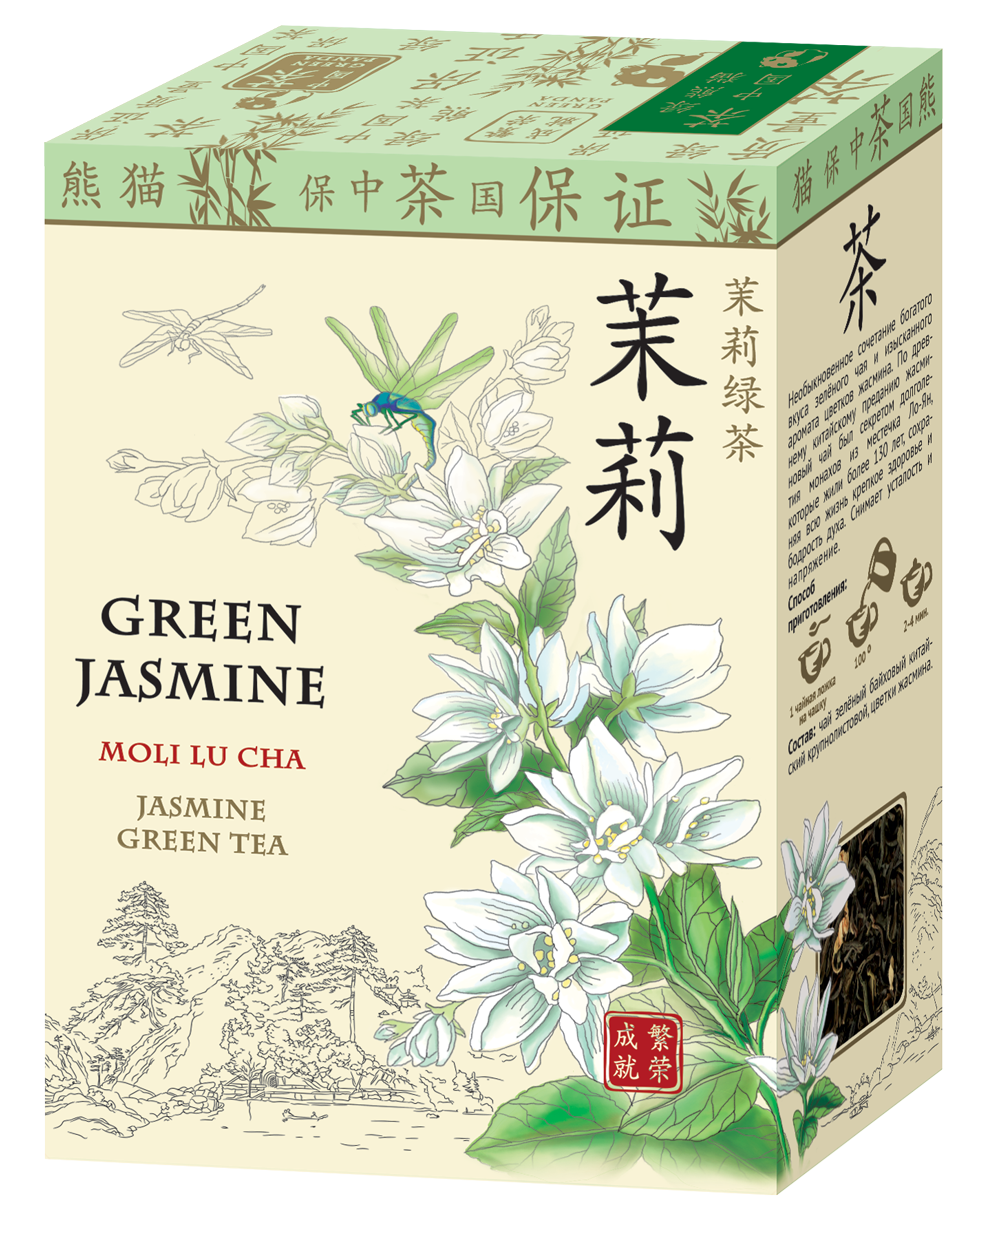 Зеленый чай с жасмином купить. Зеленый жасминовый чай китайский. Китайский зеленый чай с жасмином. Чай зелёный китайский ча Бао Люй ча 100г.